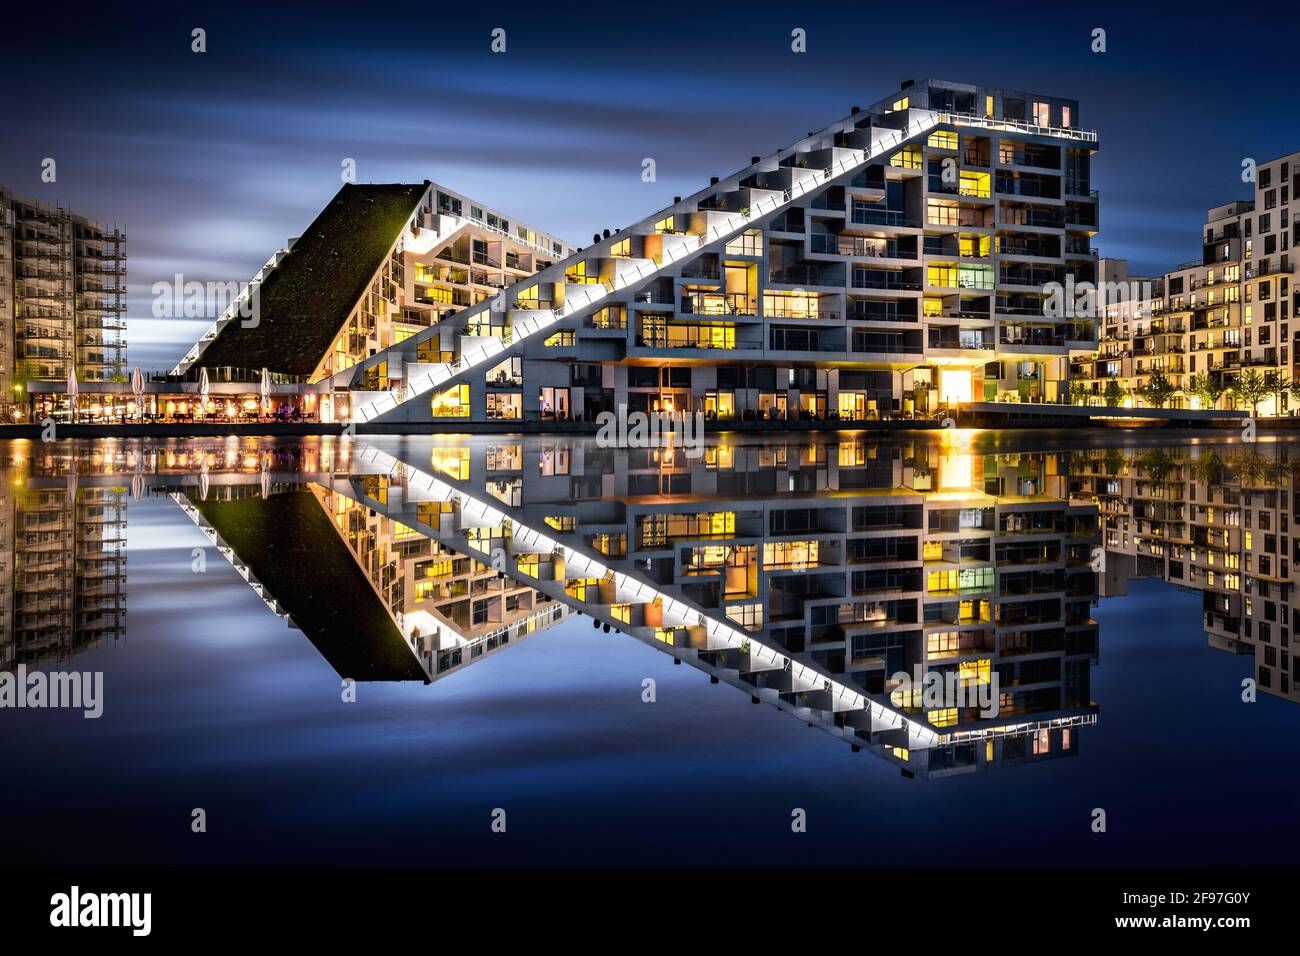 8 House in Copenhagen by architect Bjarke Ingels Group, Denmark Stock ...